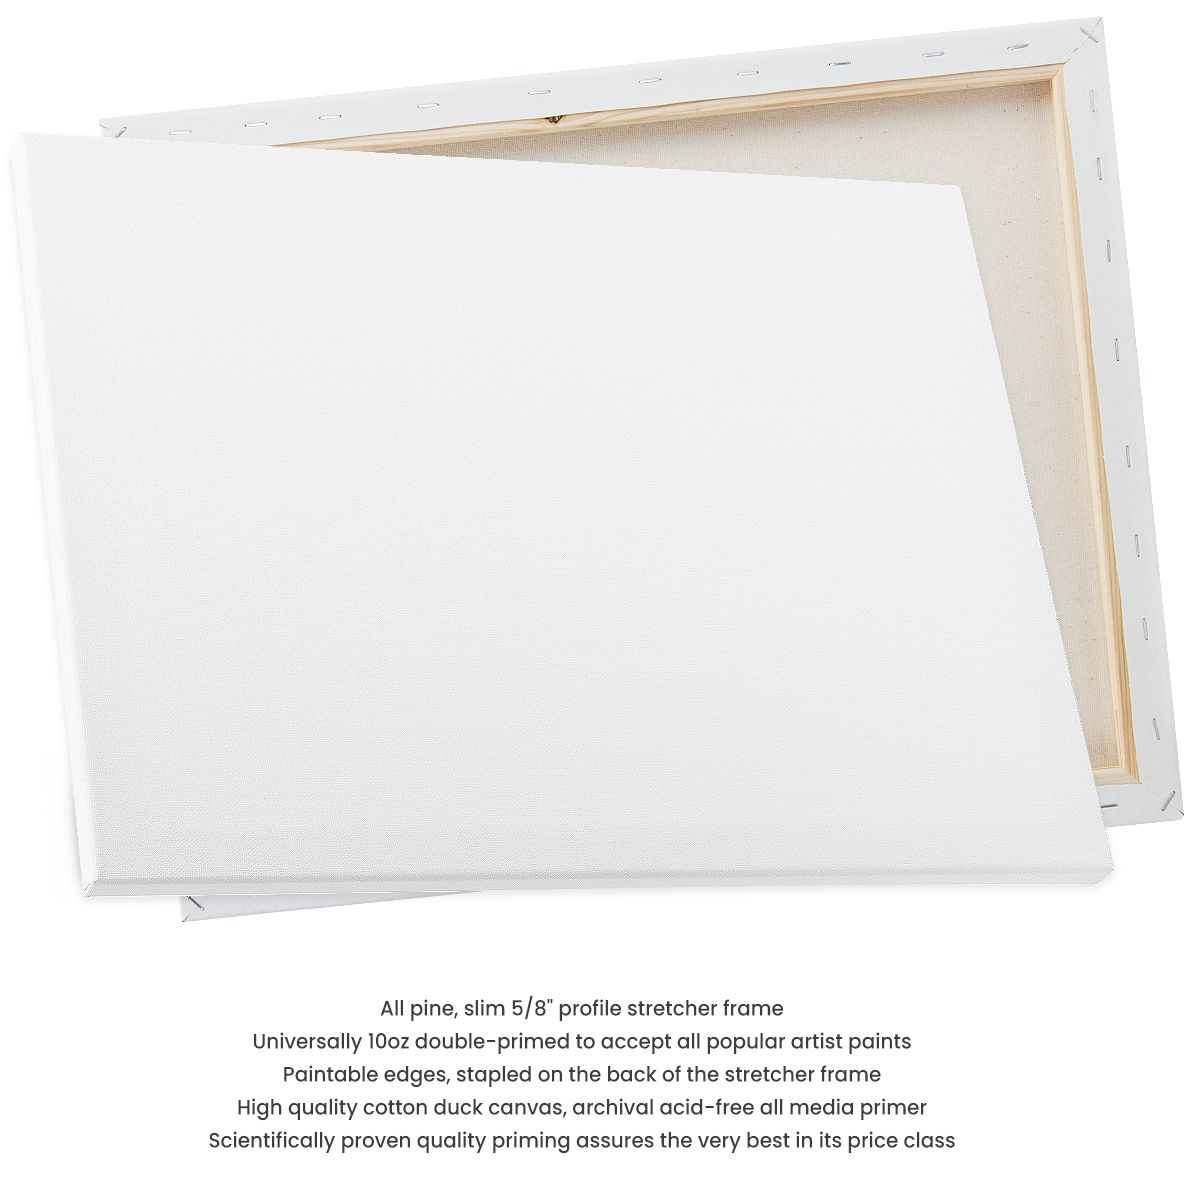 Premiere - Super Value Academy Canvas 16 x 20 (2 Pack)– Let's Make Art